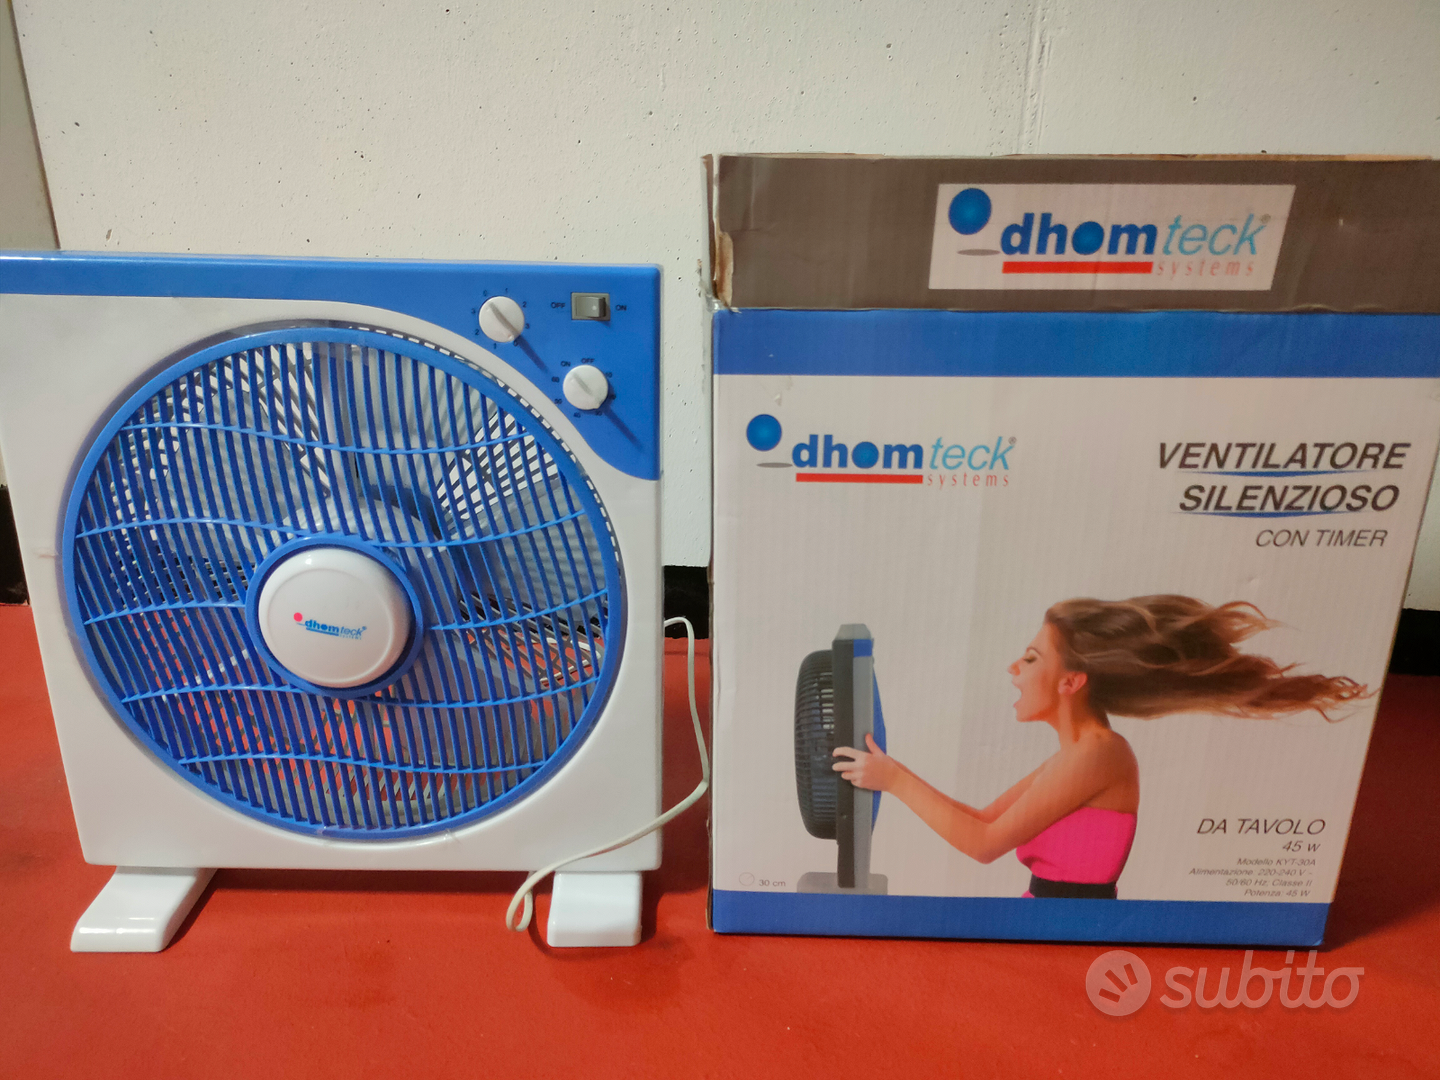 Ventilatore silenzioso - Elettrodomestici In vendita a Udine